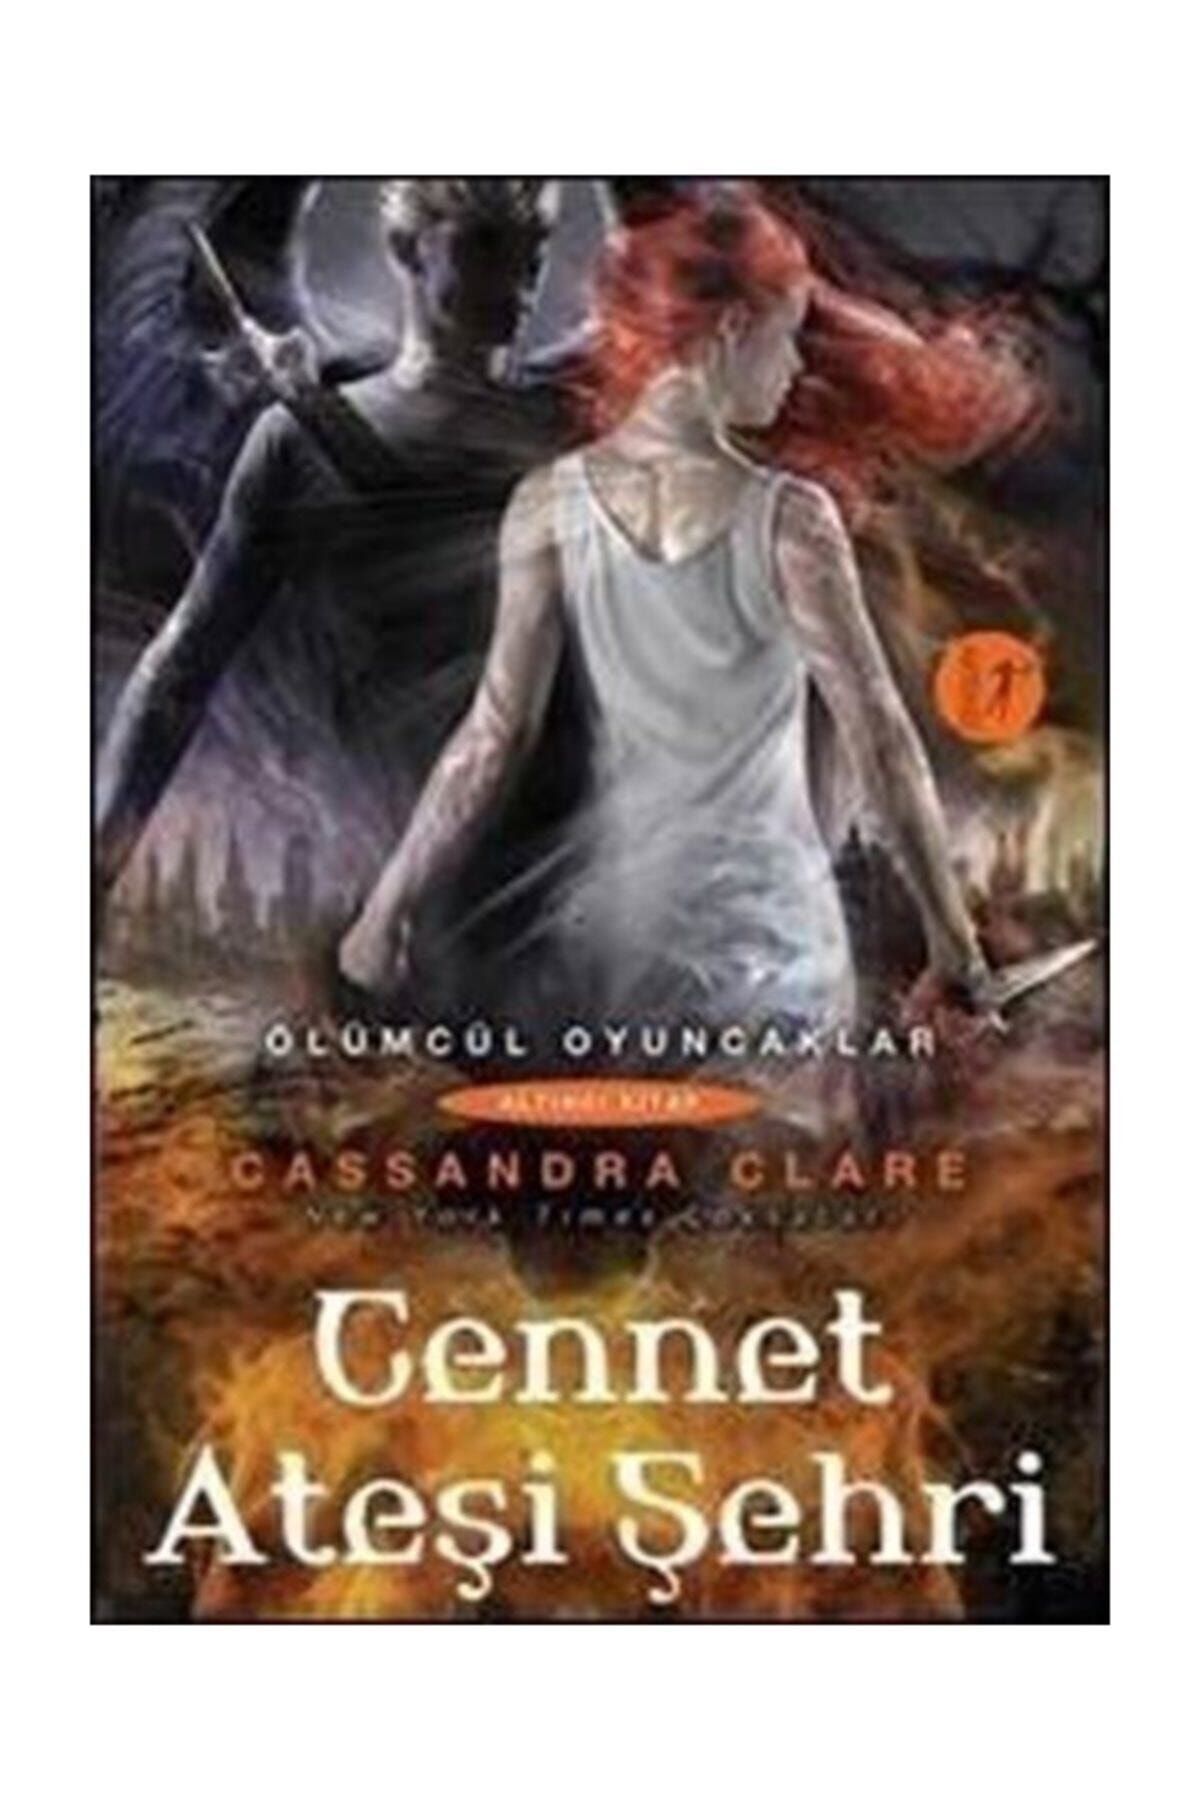 Artemis Yayınları Cennet Ateşi Şehri  Ölümcül Oyuncaklar Serisi 6.Kitap Altıncı Kitap Cassandra Clare